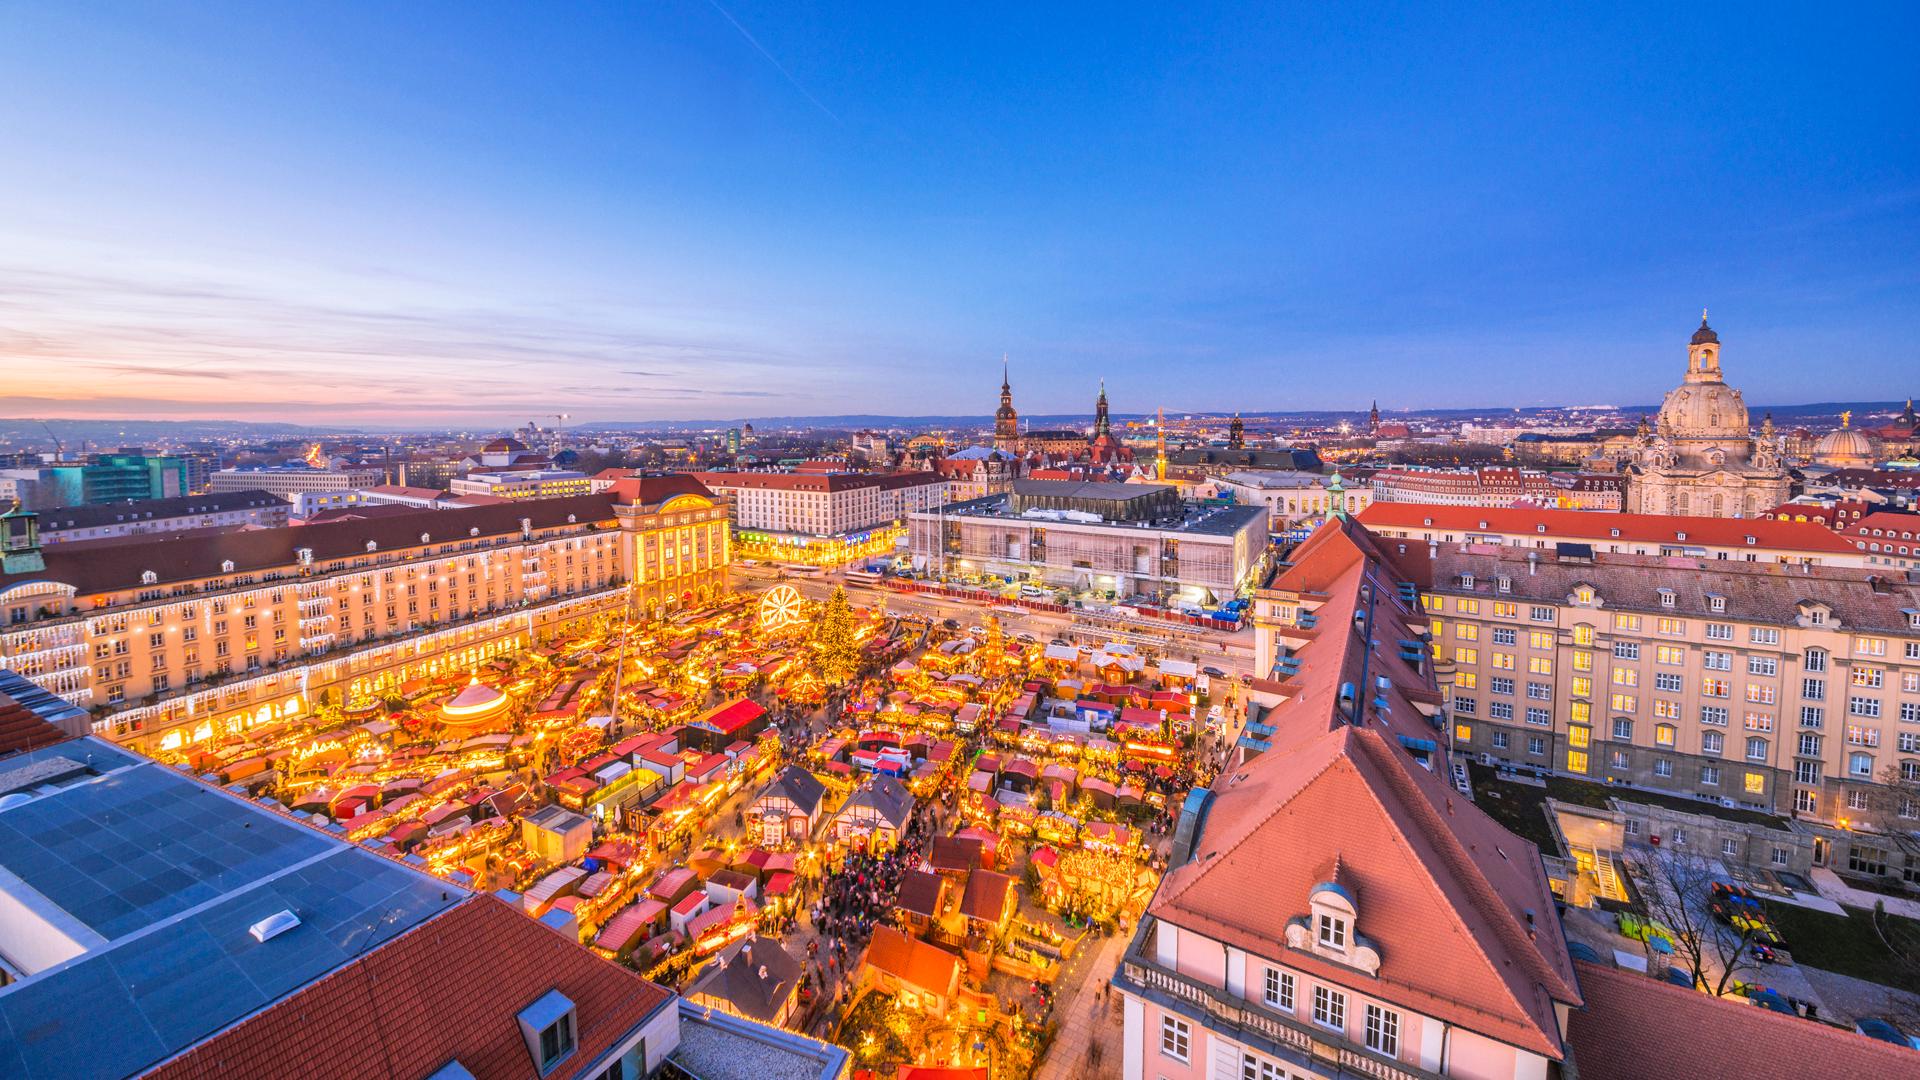 Der Blick von oben auf die Stadt Dresden und dessen Weihnachtsmarkt.